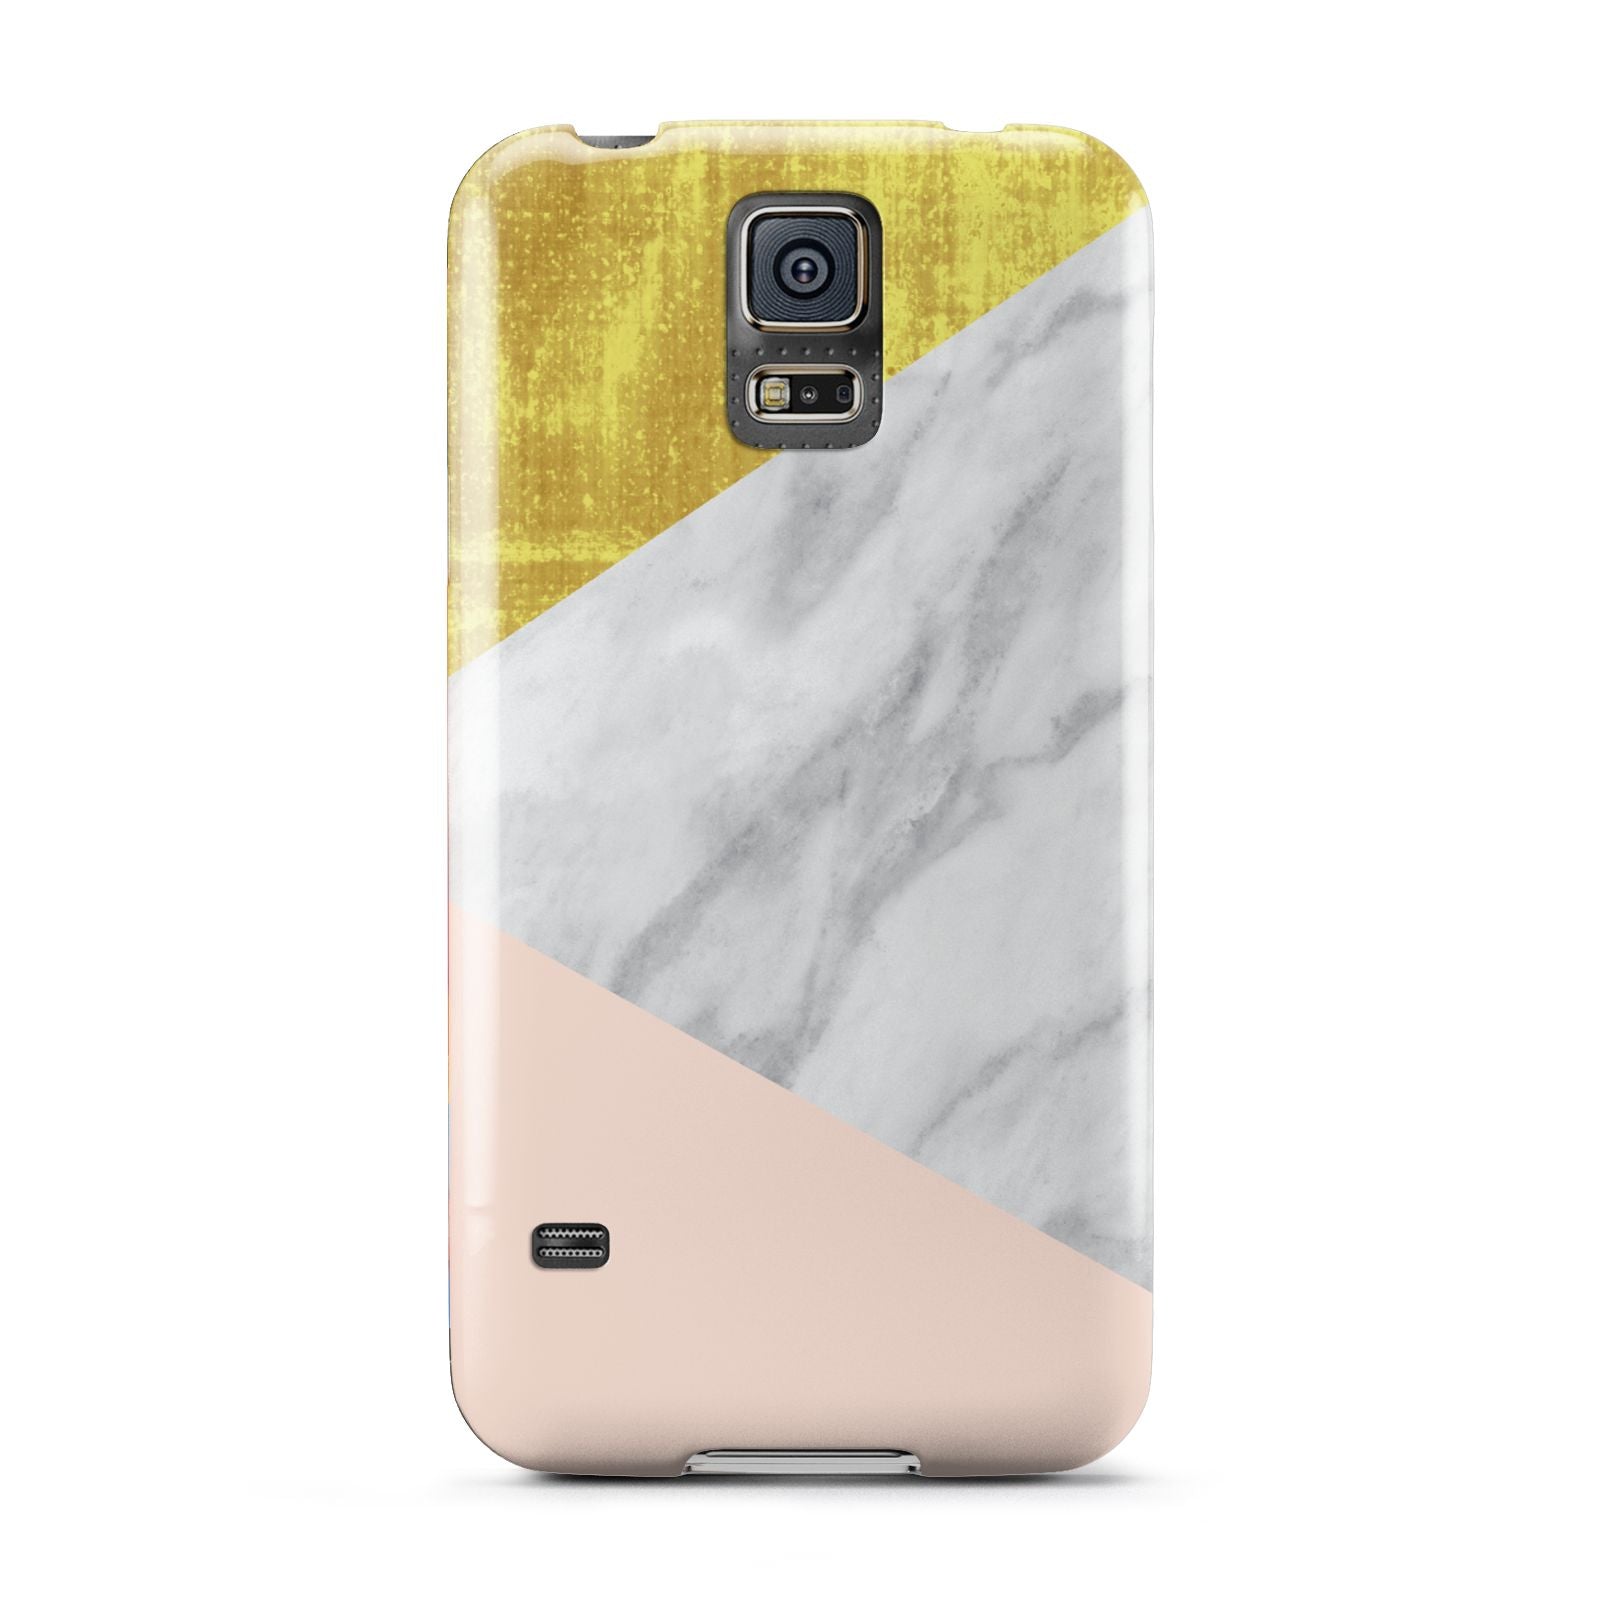 Marble White Gold Foil Peach Samsung Galaxy S5 Case